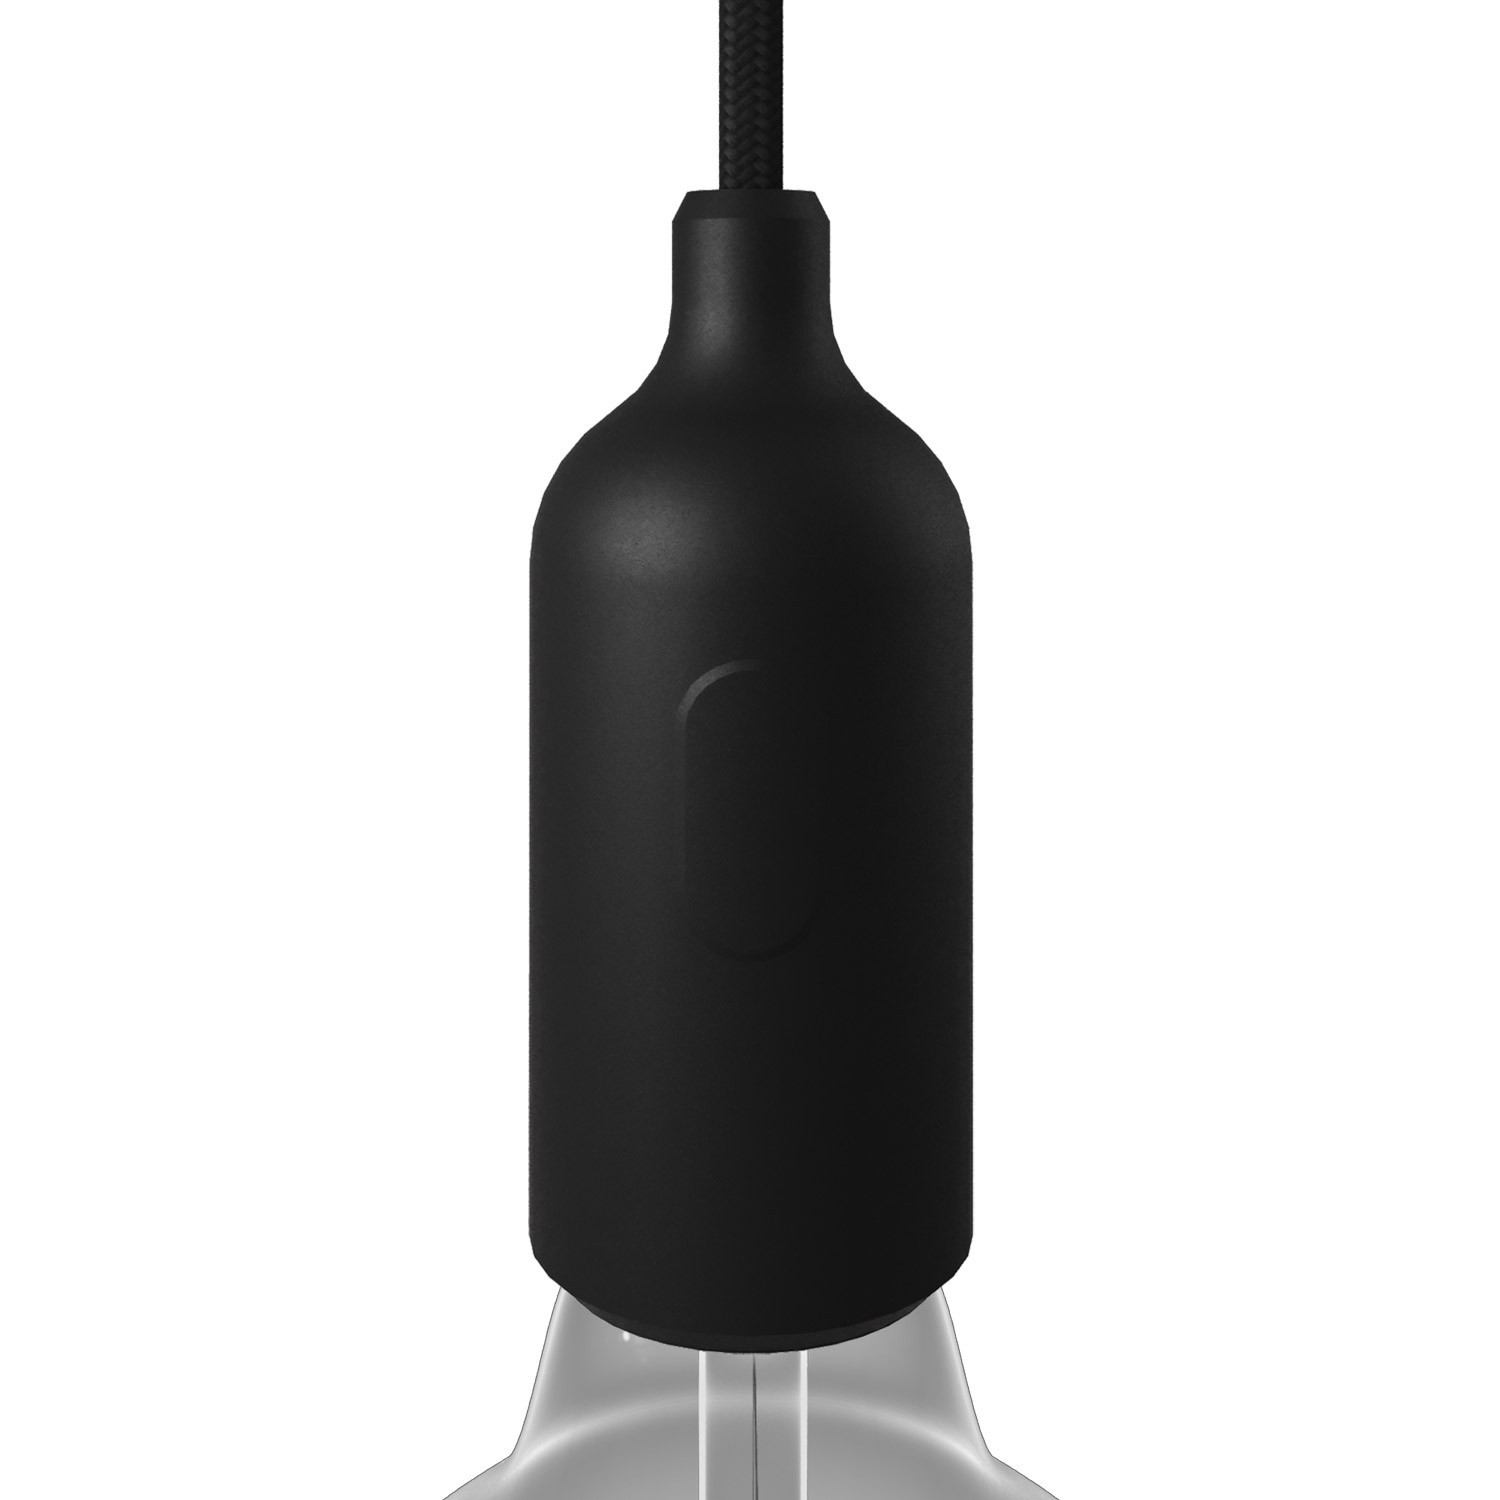 Silicone E27 lamphouderset met schakelaar en verborgen kabelklemmen